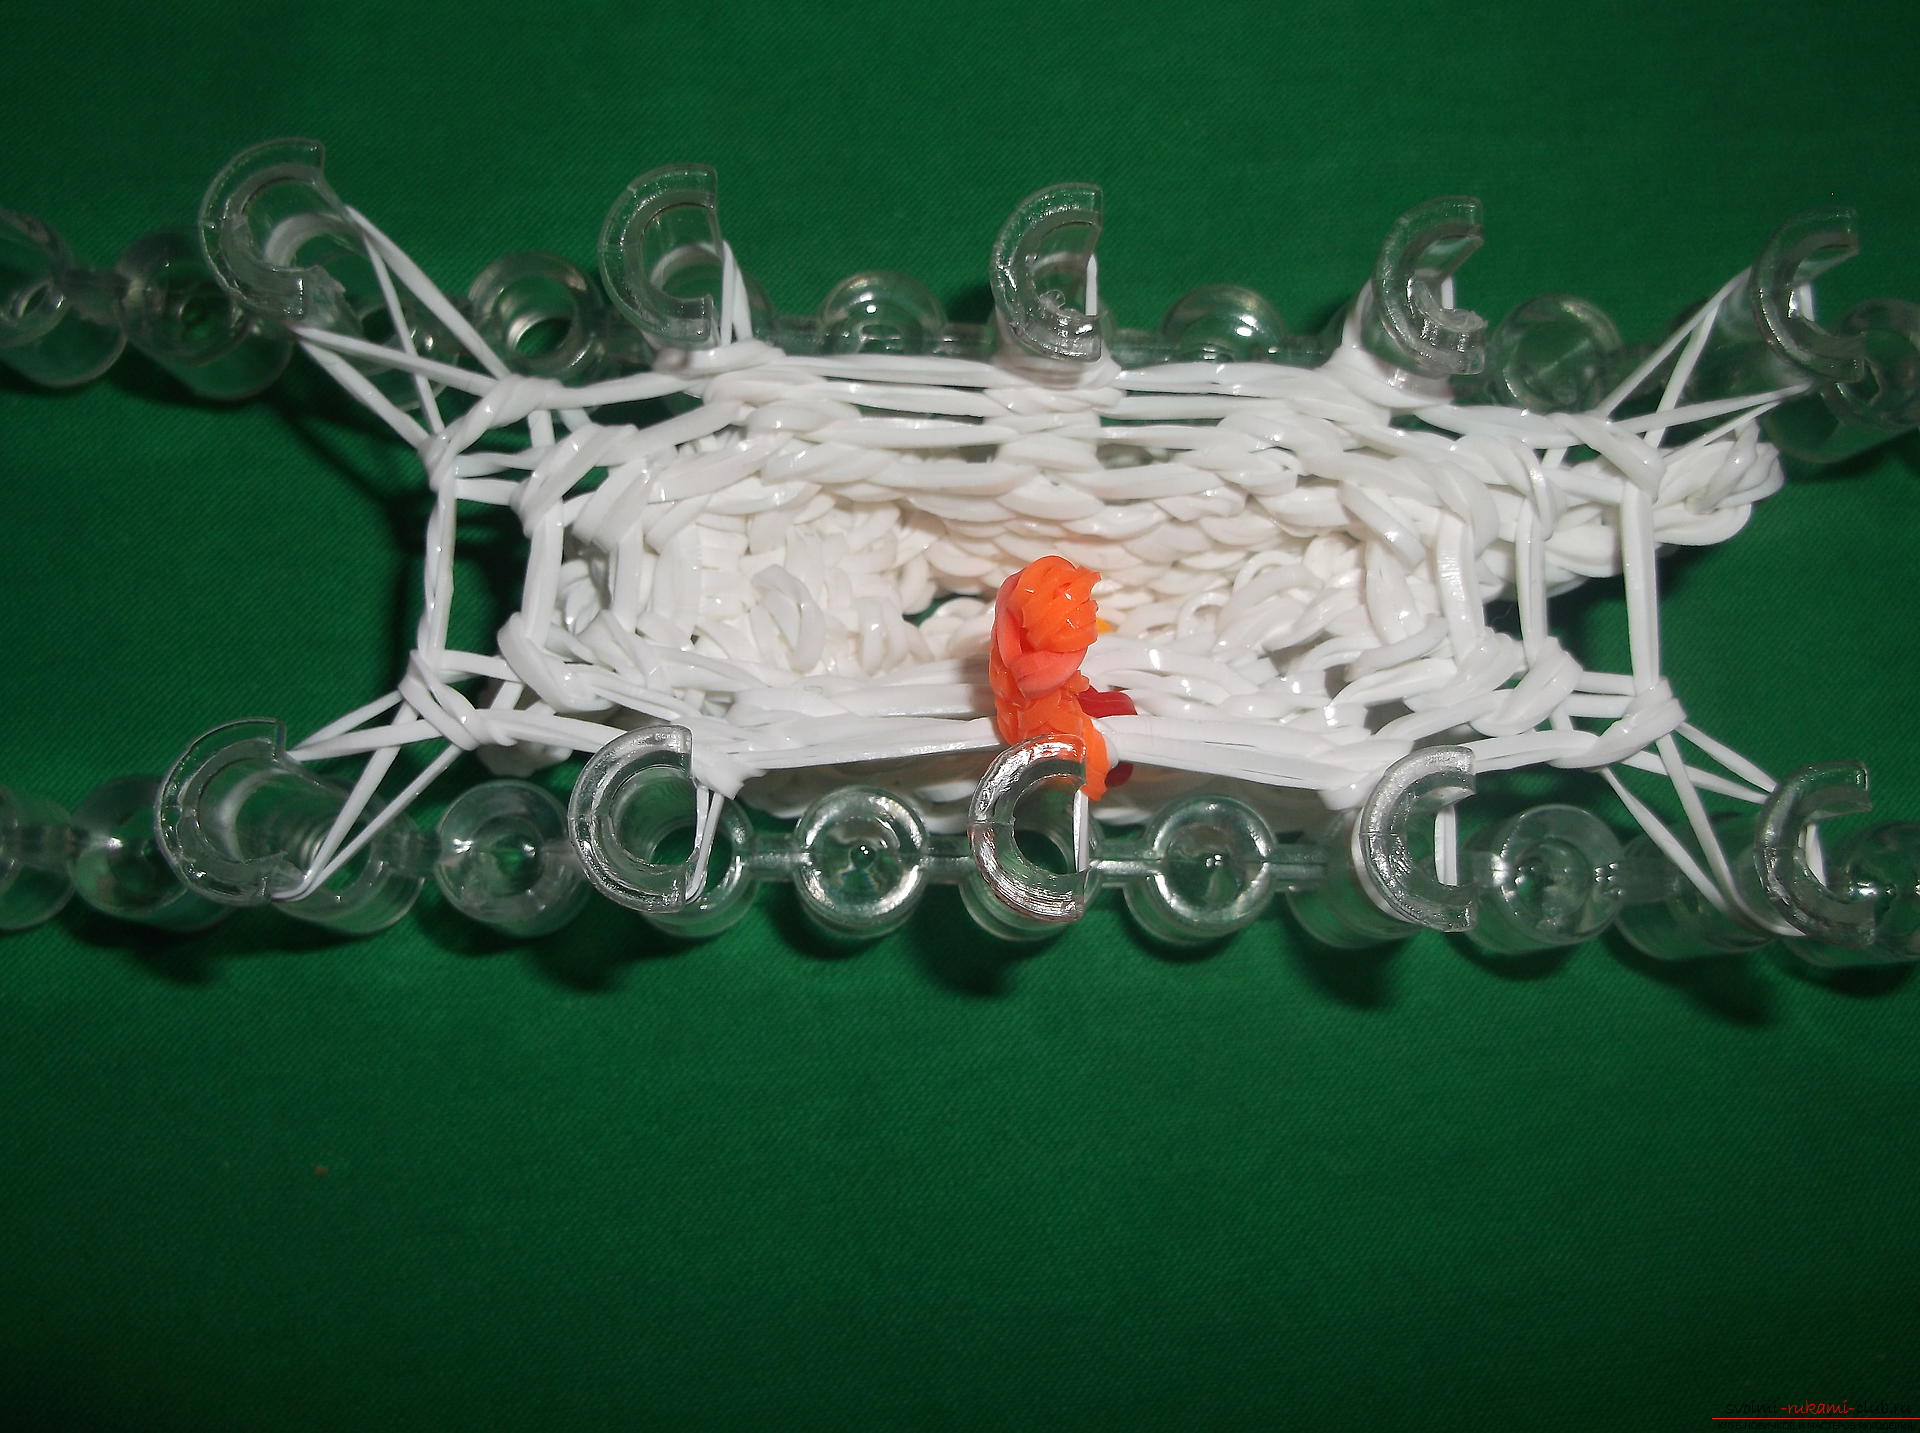 Фото к уроку по плетению из резиночек снеговичка к новогодним праздникам. Фото №10